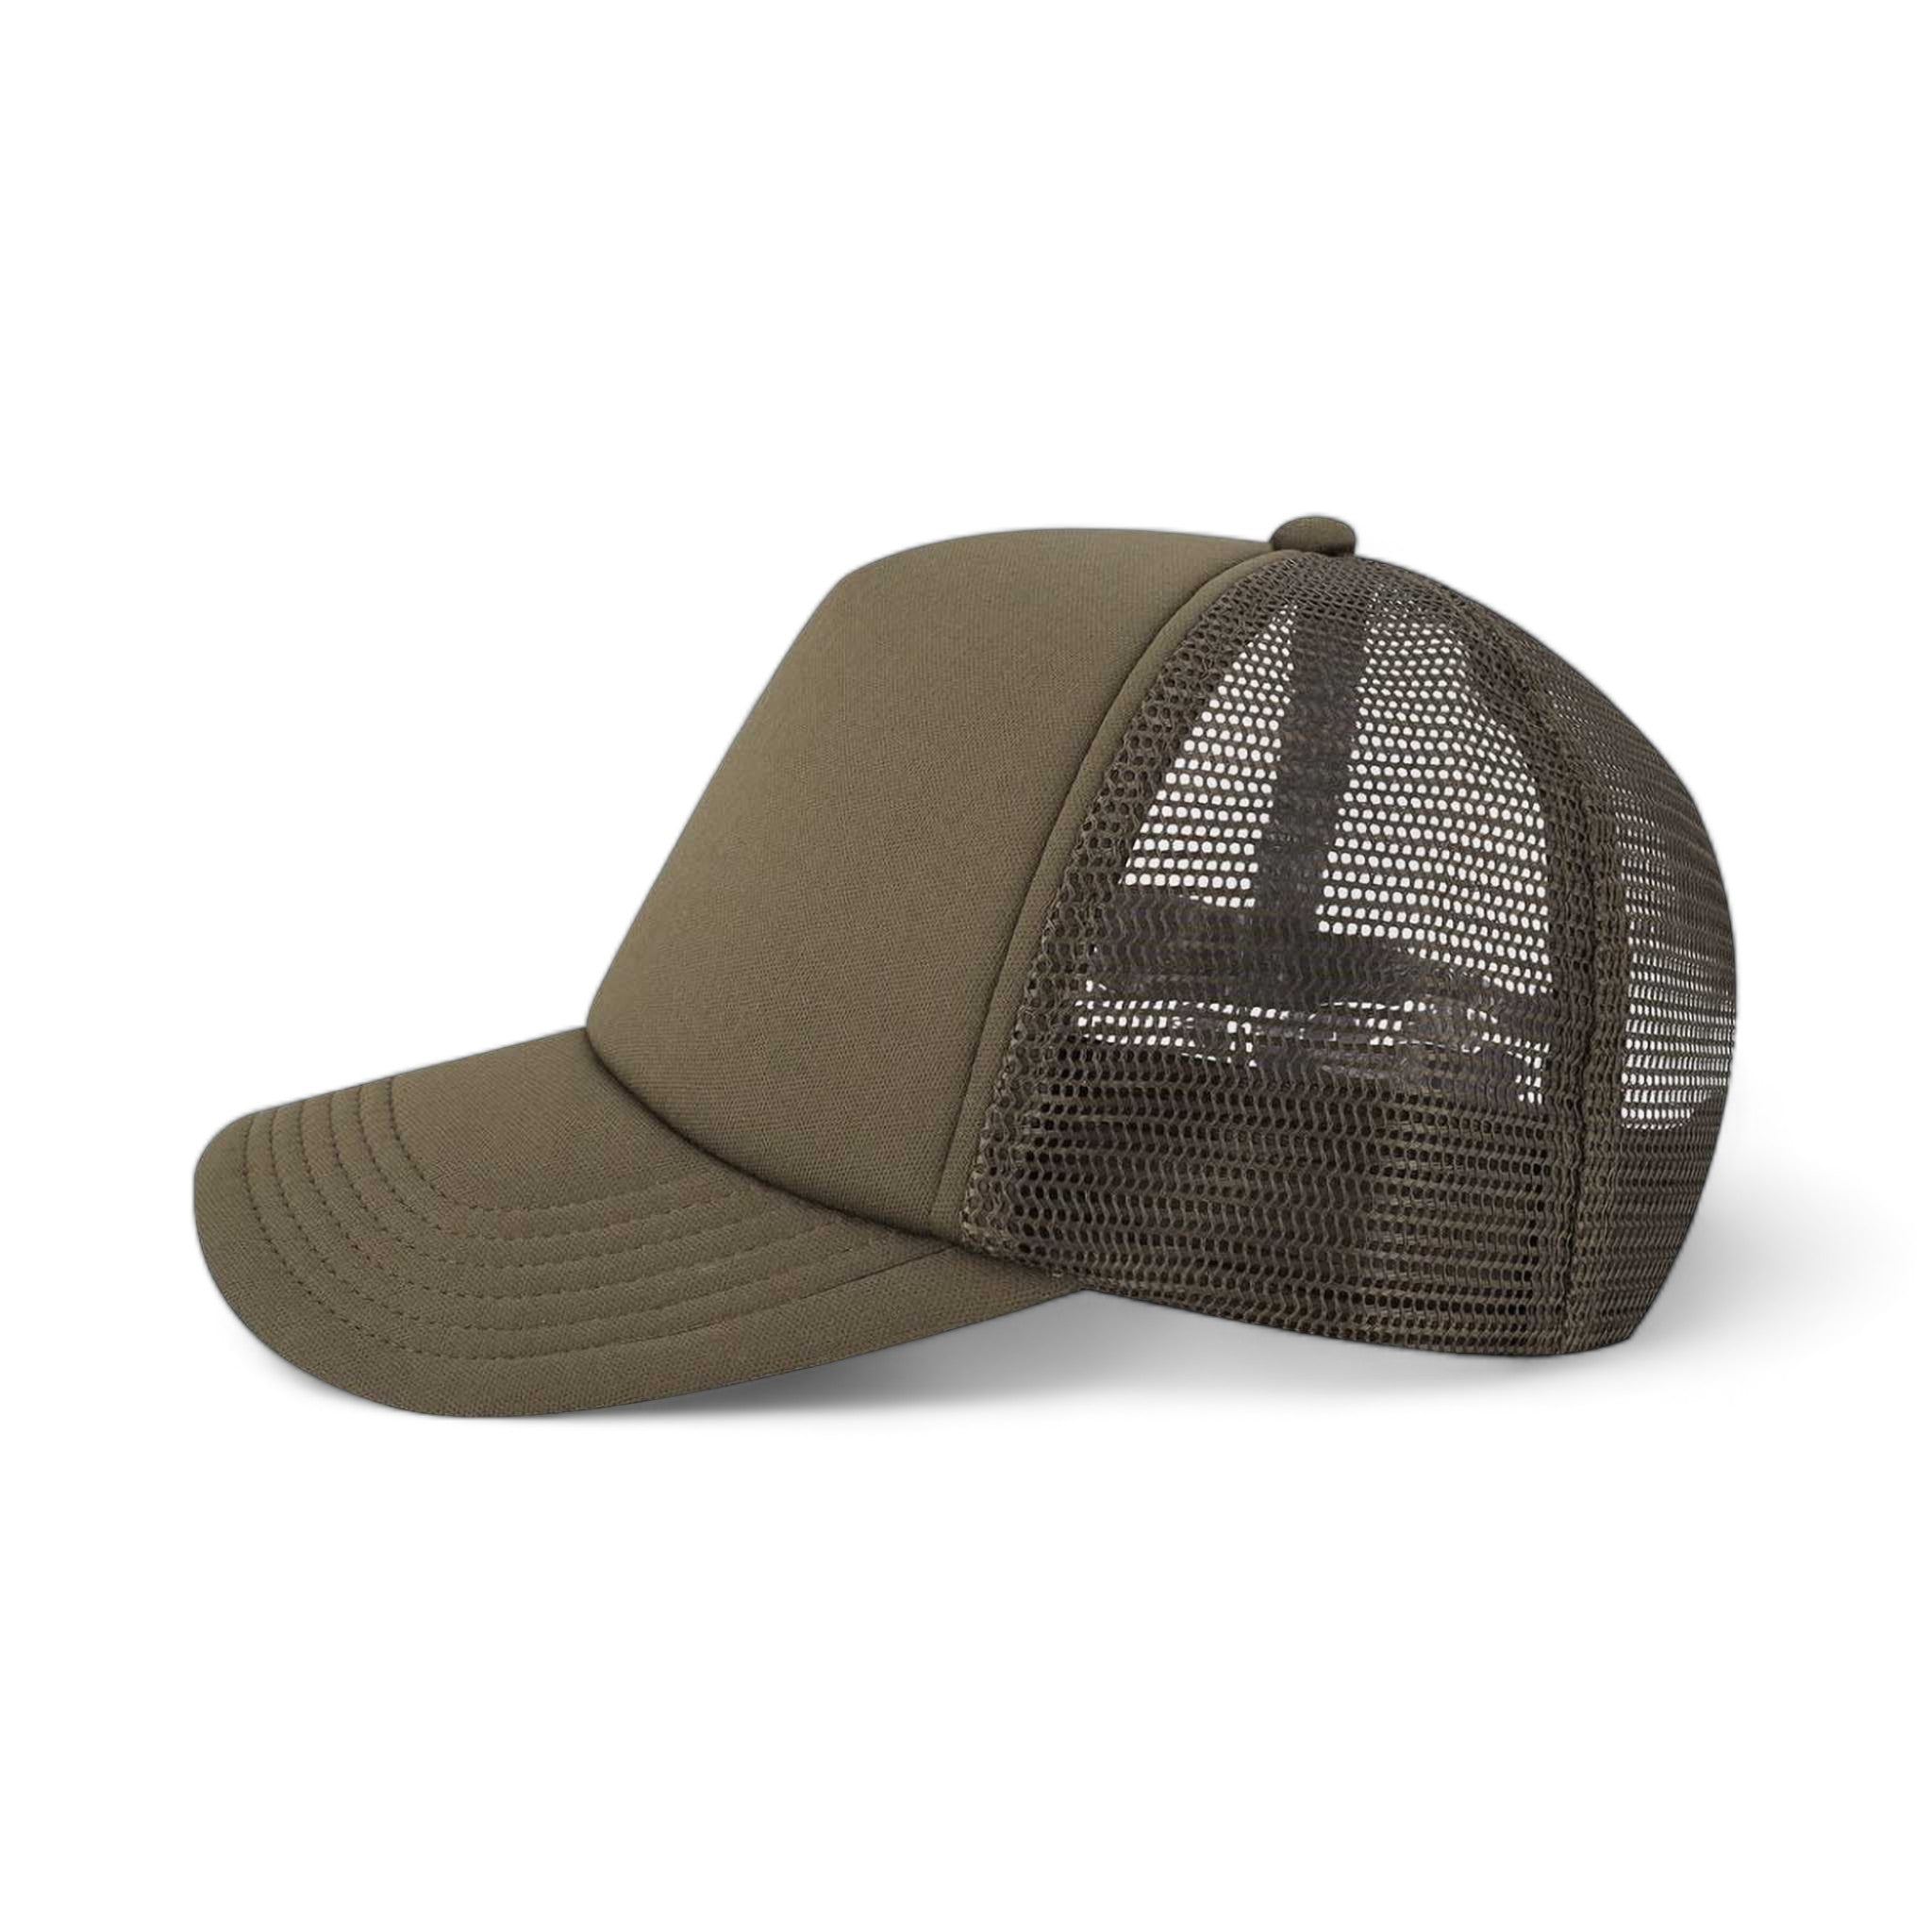 Side view of LEGACY LTA custom hat in brown